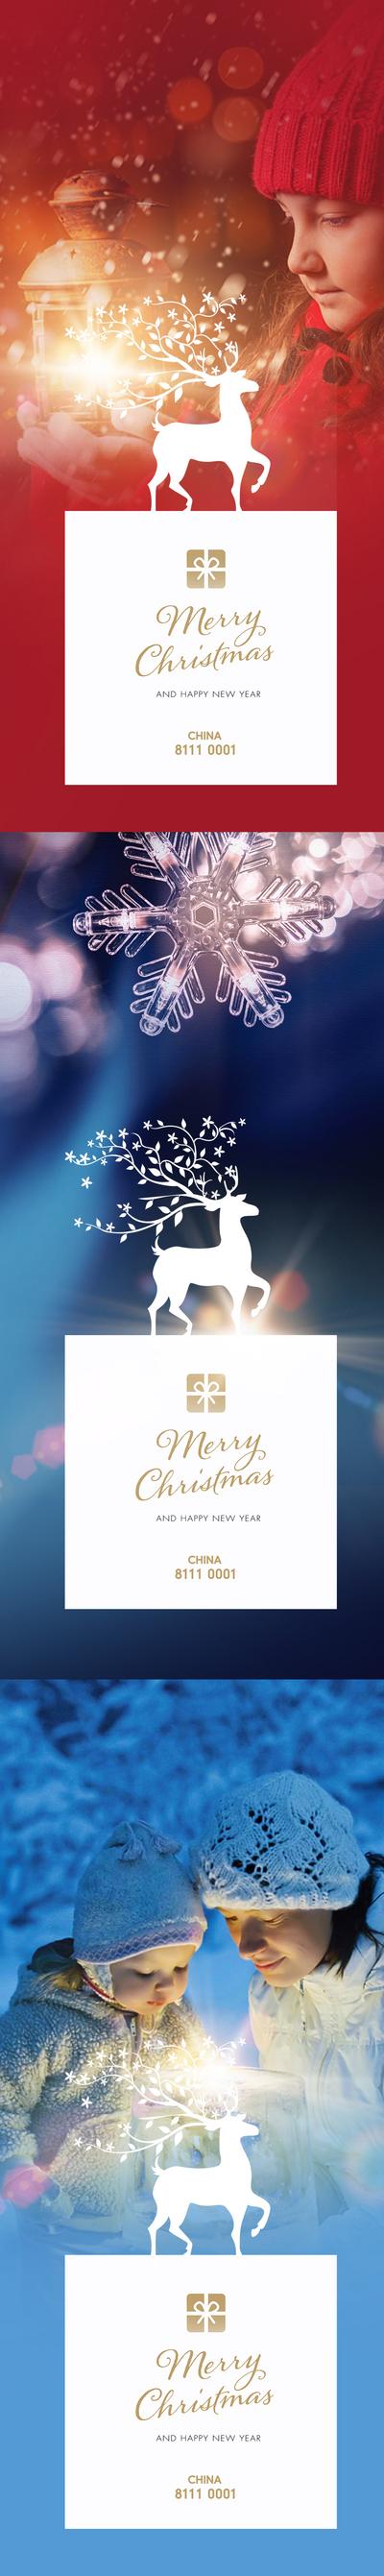 【南门网】海报  房地产  圣诞节  系列    灯光   麋鹿   雪   雪花  母子 